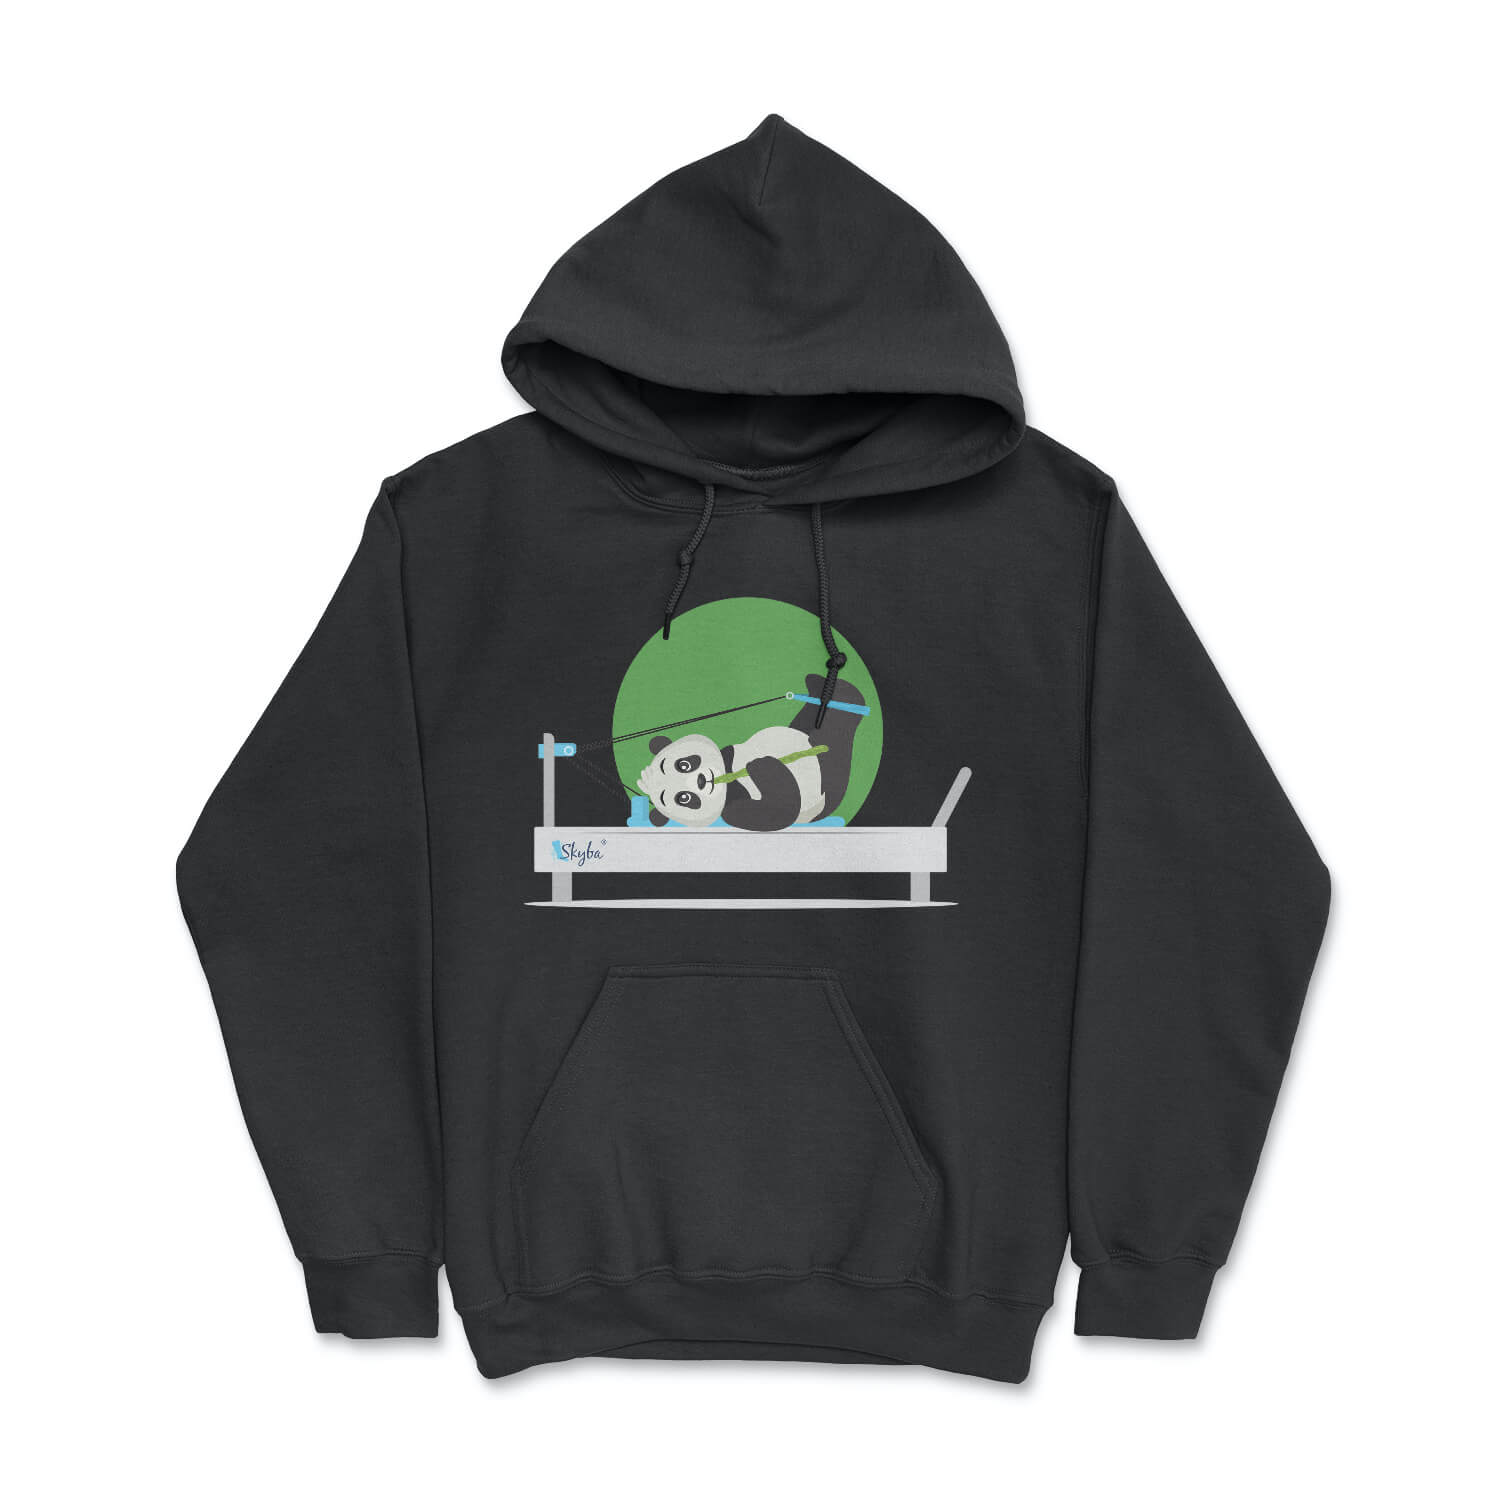 Hungry Panda on Reformer - Cozy Hooded Sweatshirt Skyba Hoodie